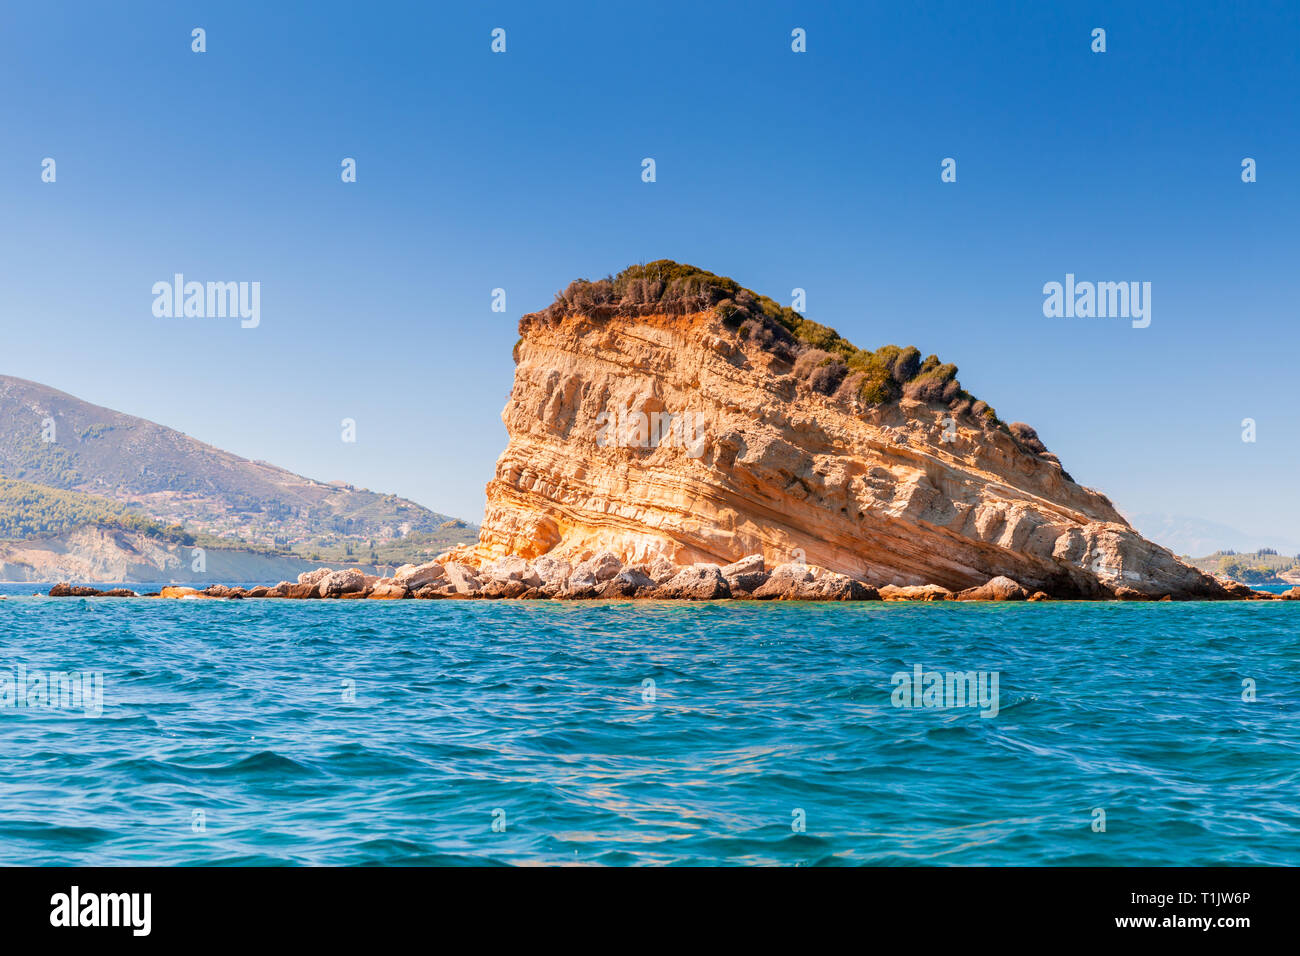 Îlot rocheux près de Zakynthos île grecque dans la mer Ionienne Banque D'Images